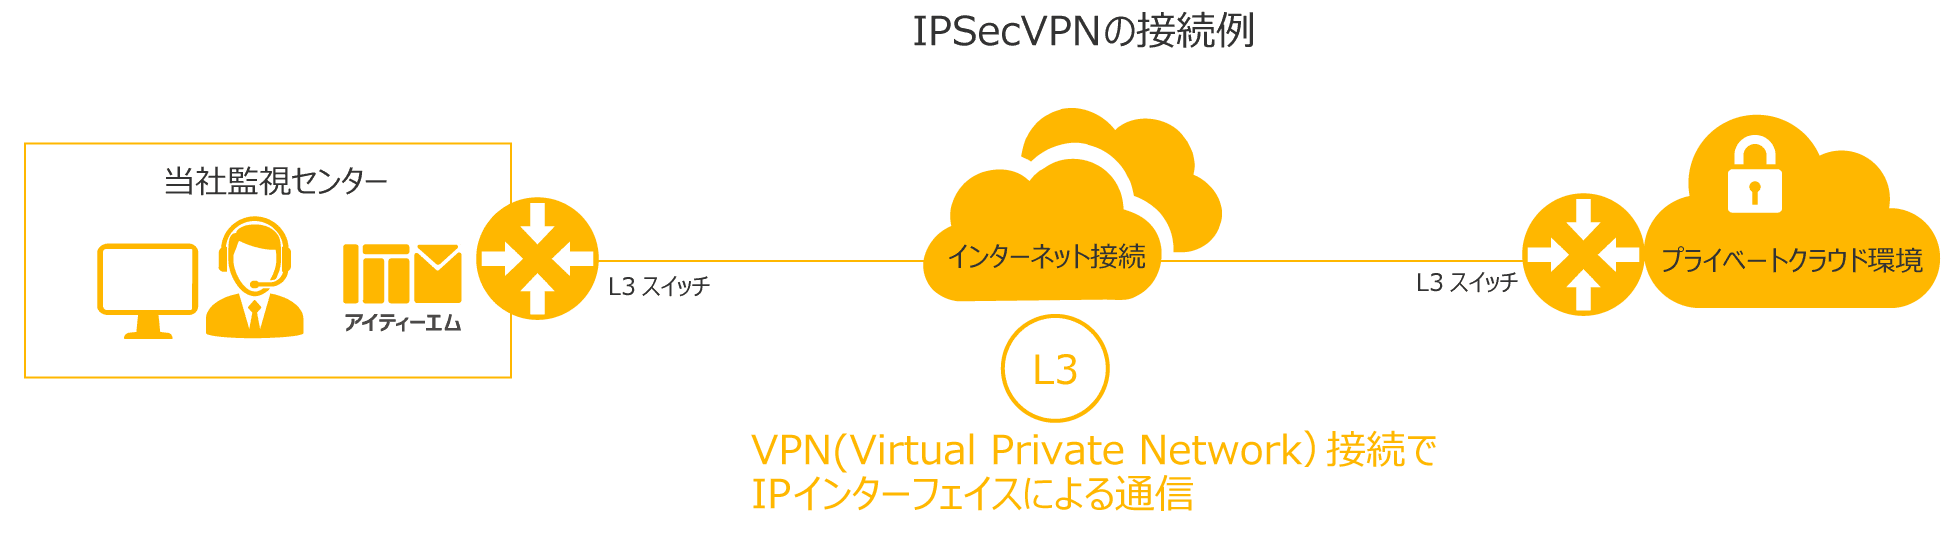 拠点間IPSecVPNイメージ図